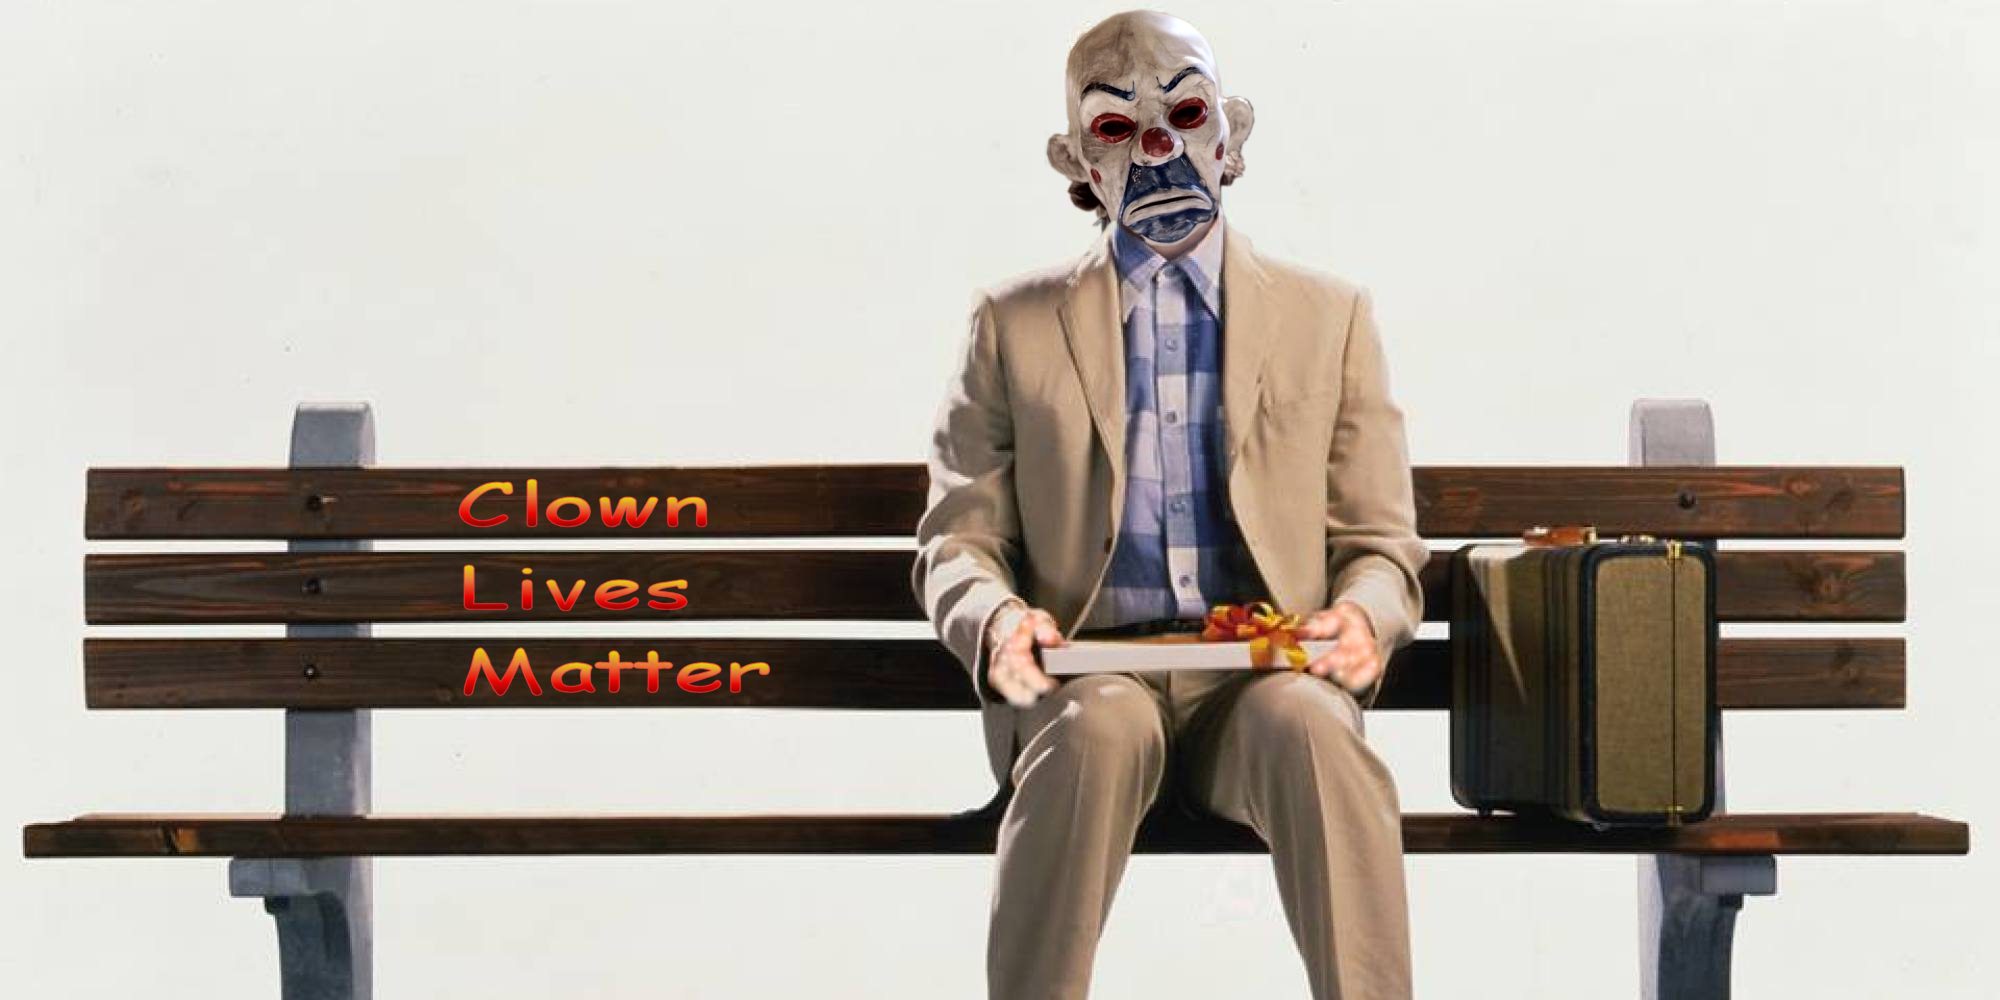 High Quality Clown Lives Matter Blank Meme Template